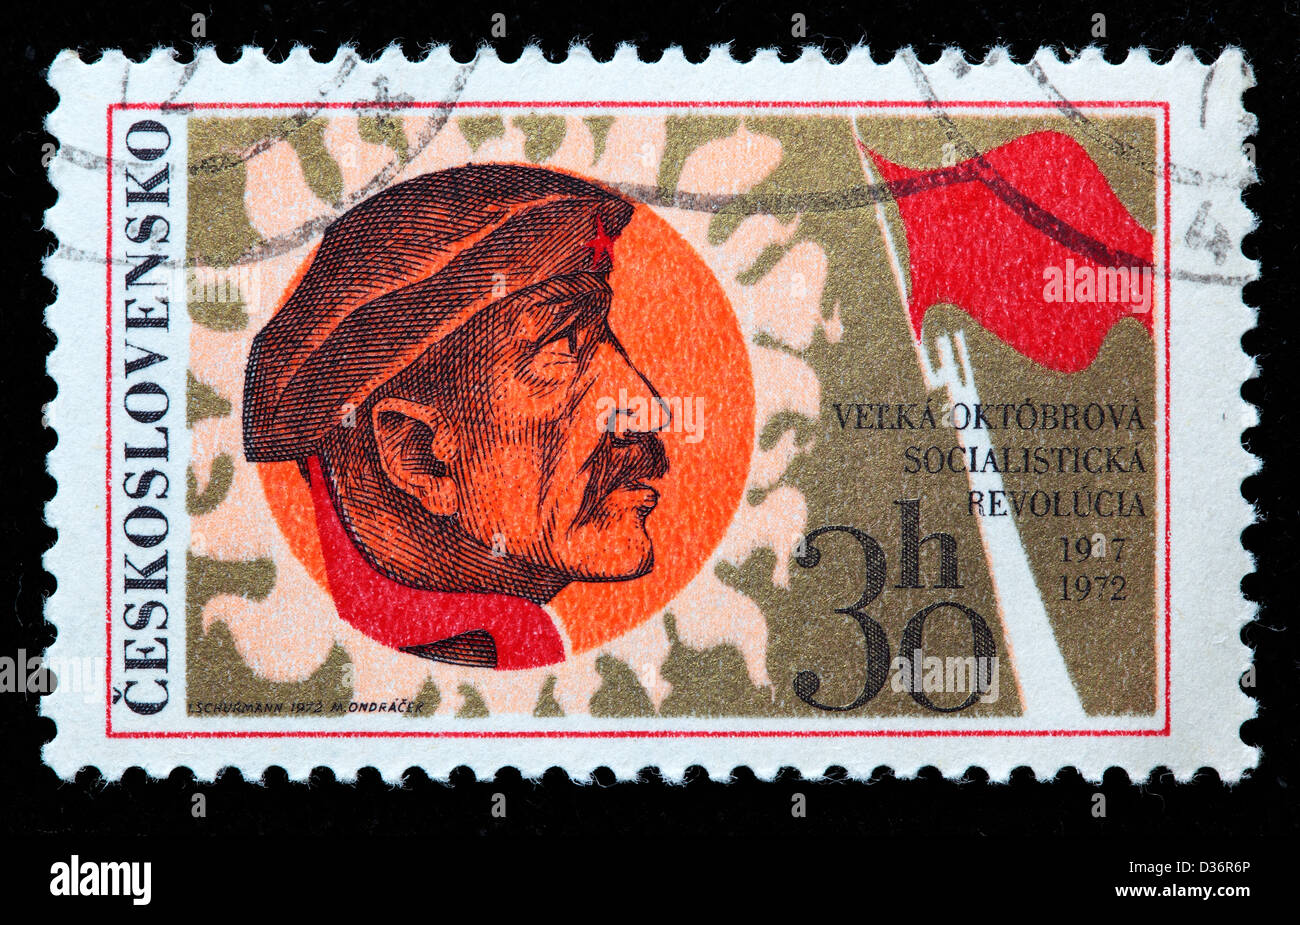 Jahrestag der russischen Oktoberrevolution, Briefmarke, Tschechoslowakei, 1972 Stockfoto